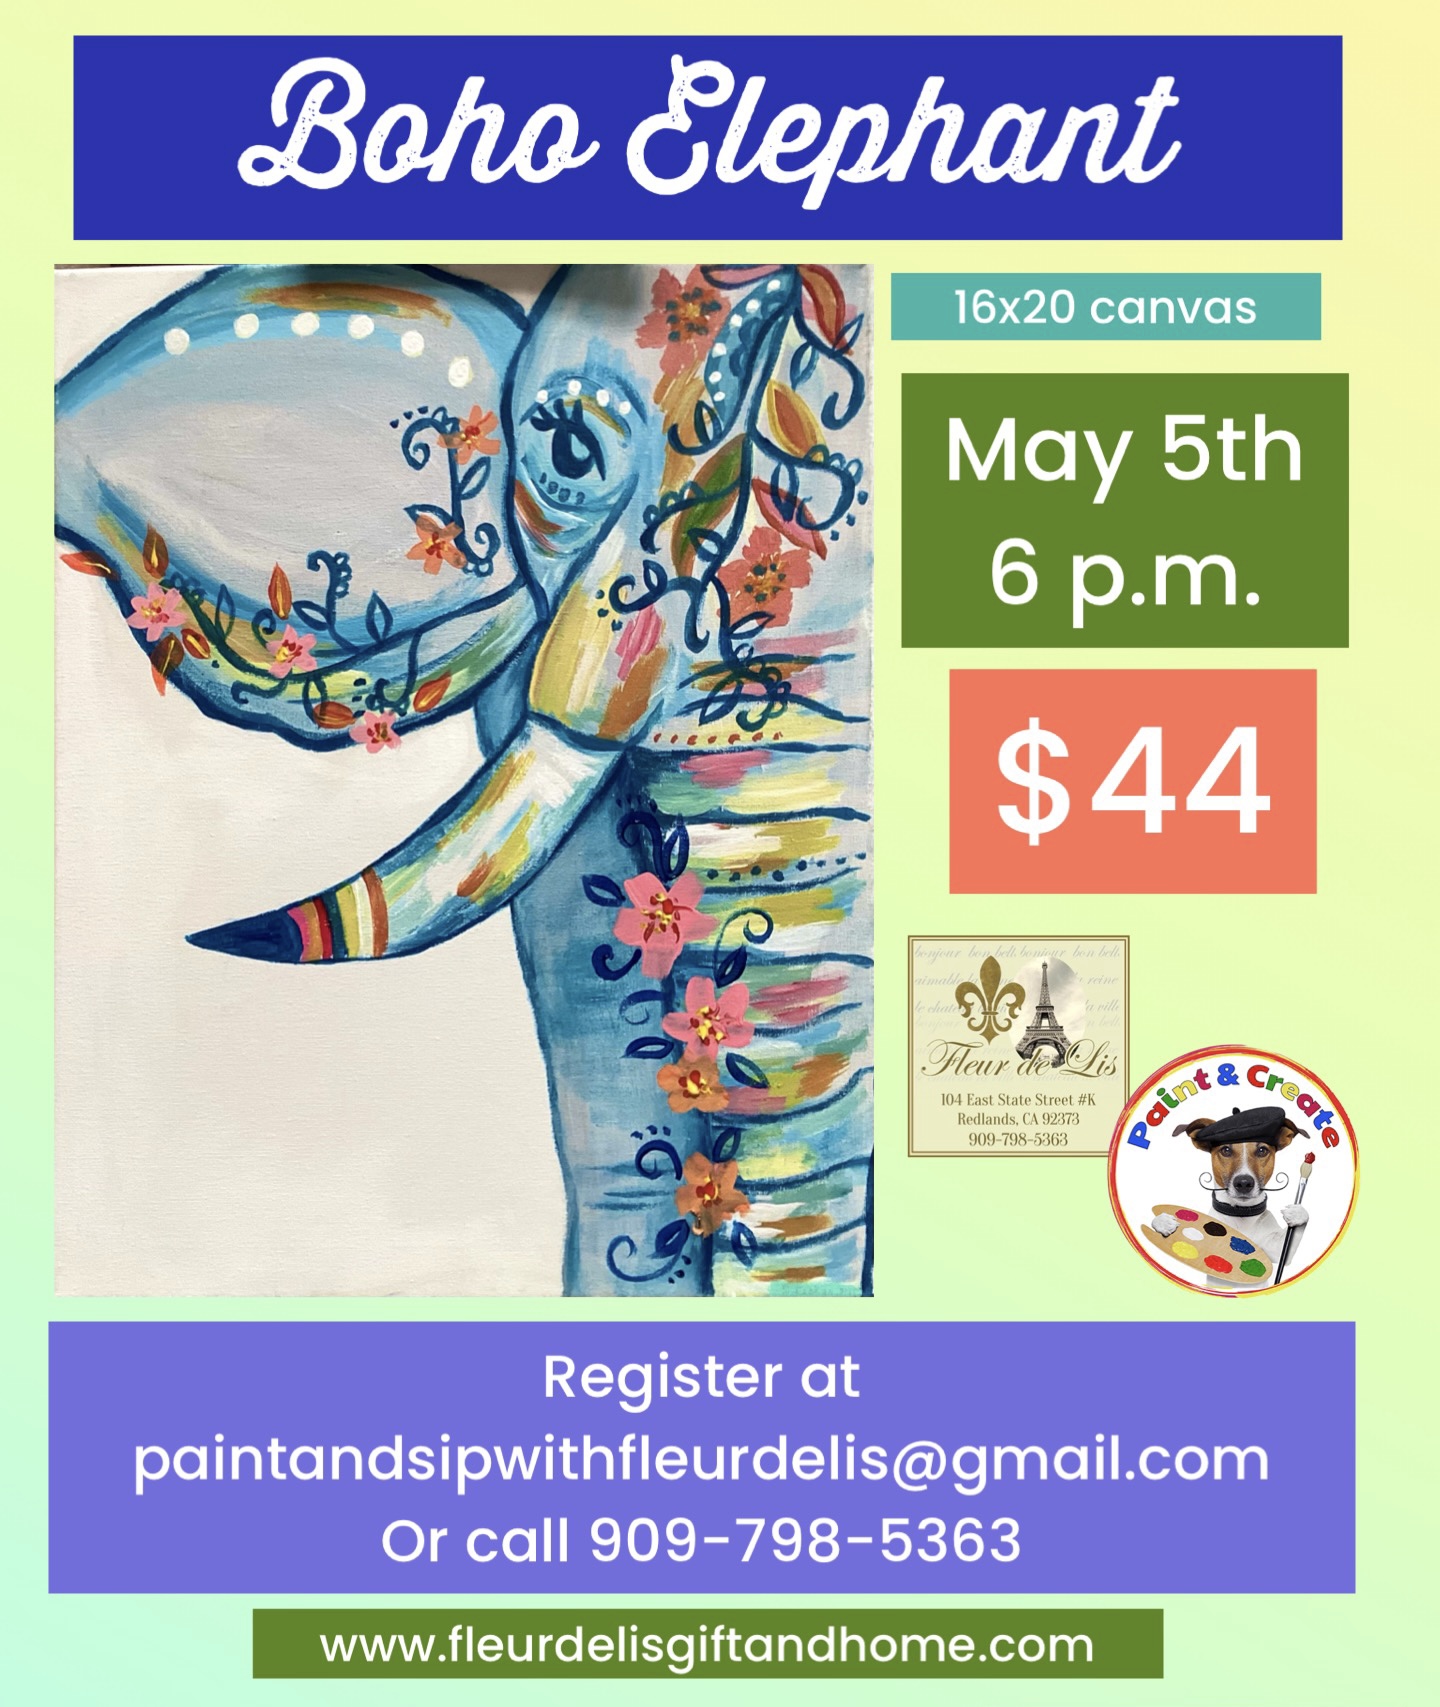 Boho Elephant May 5th 6 p.m.